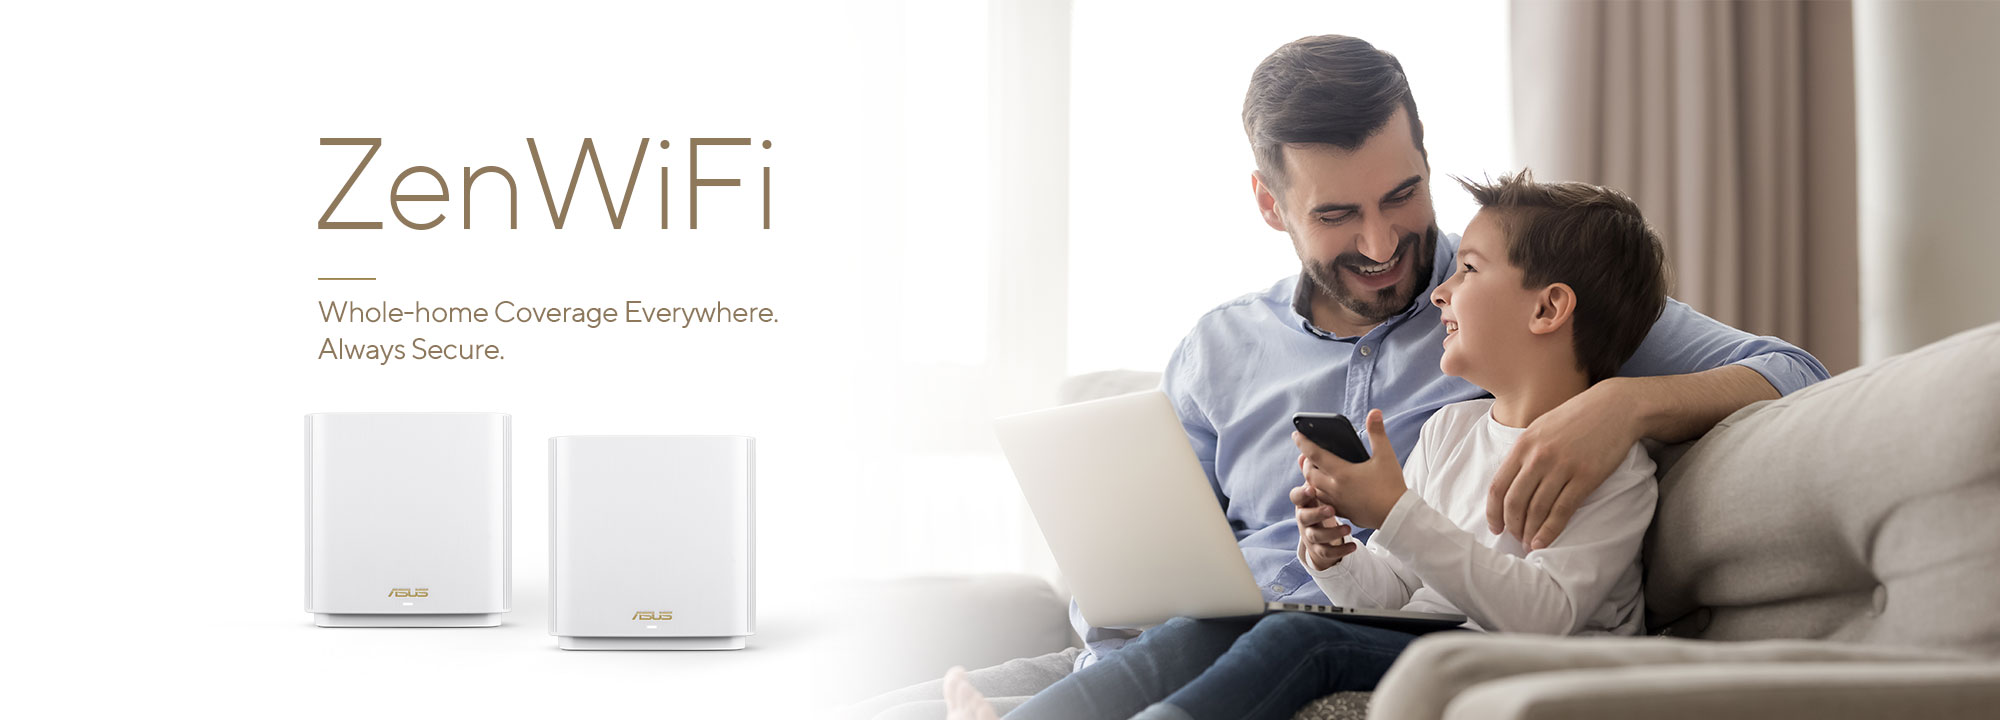 Az ASUS ZenWiFi a legjobb teljes otthonos mesh WiFi rendszer, amely stabil és gyors WiFi kapcsolatot biztosít az összes eszközöd számára.